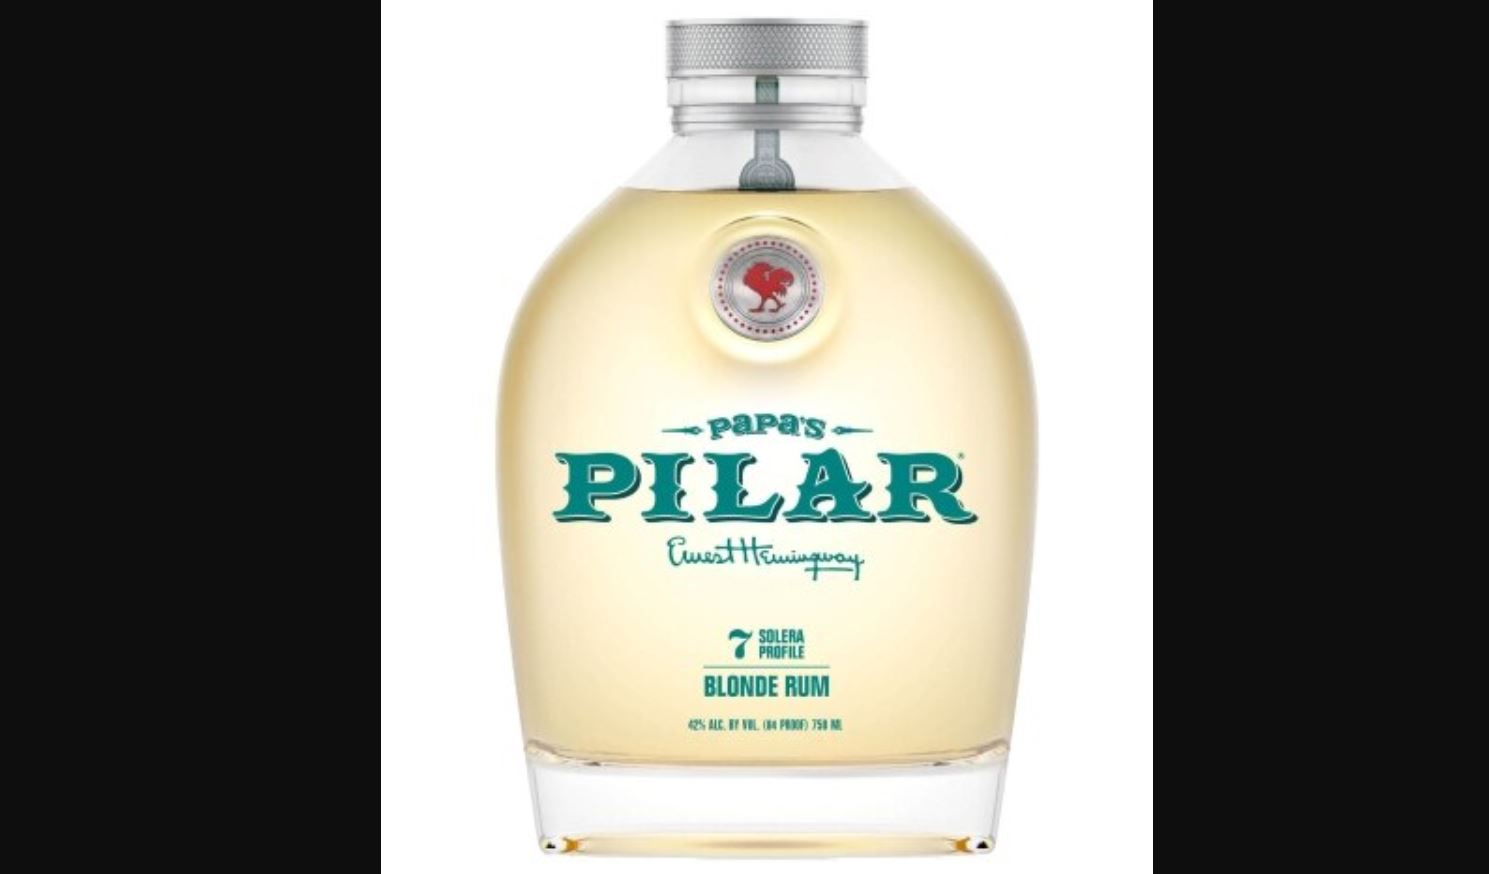 Papa’s Pilar Blonde Rum